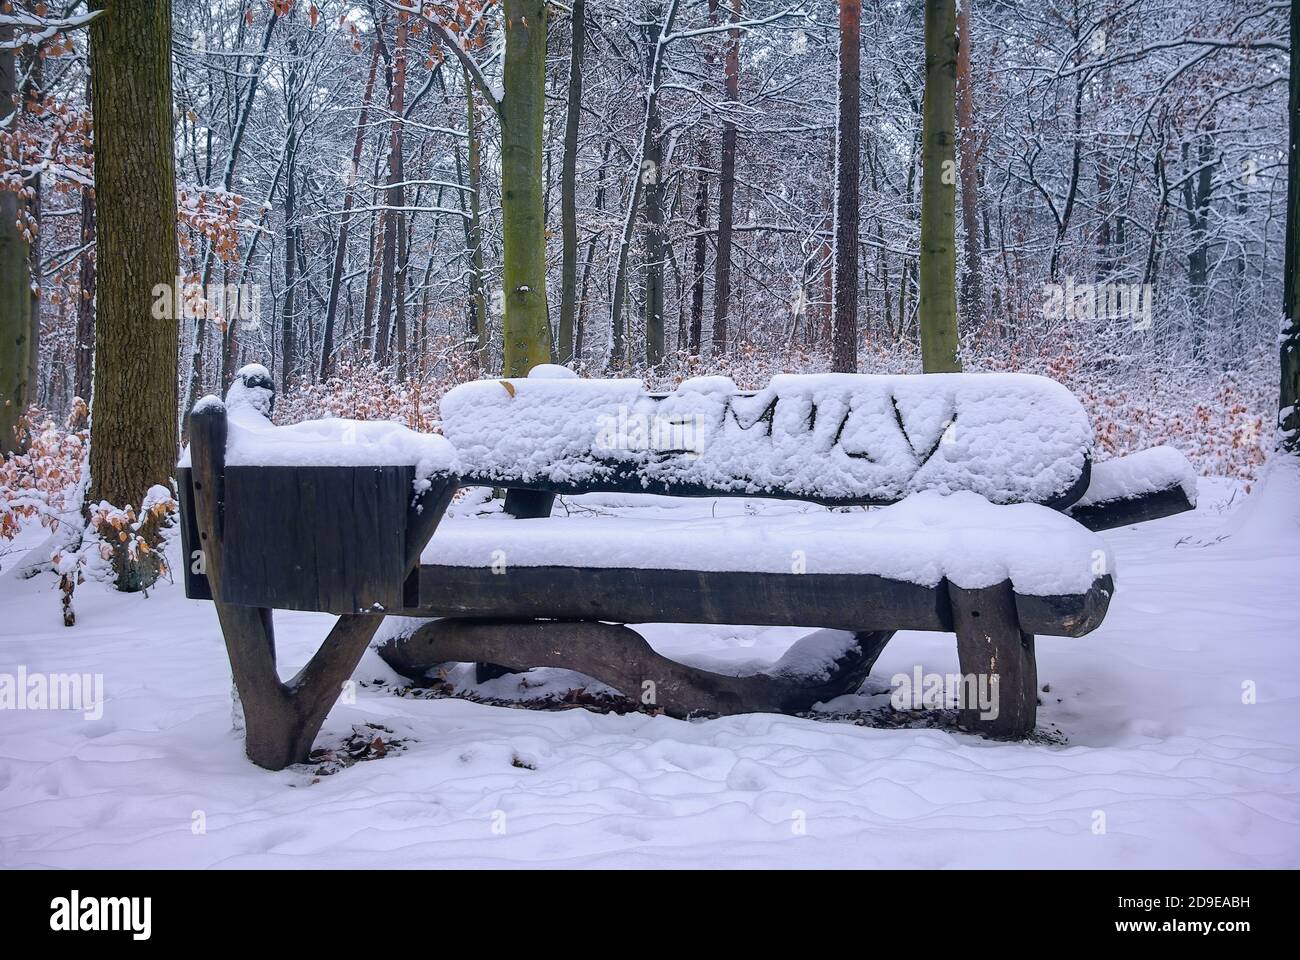 Jemand muss in Emily verliebt sein und hat ihren Namen im Winter auf einer Bank im Wald im Schnee geschrieben. Stockfoto